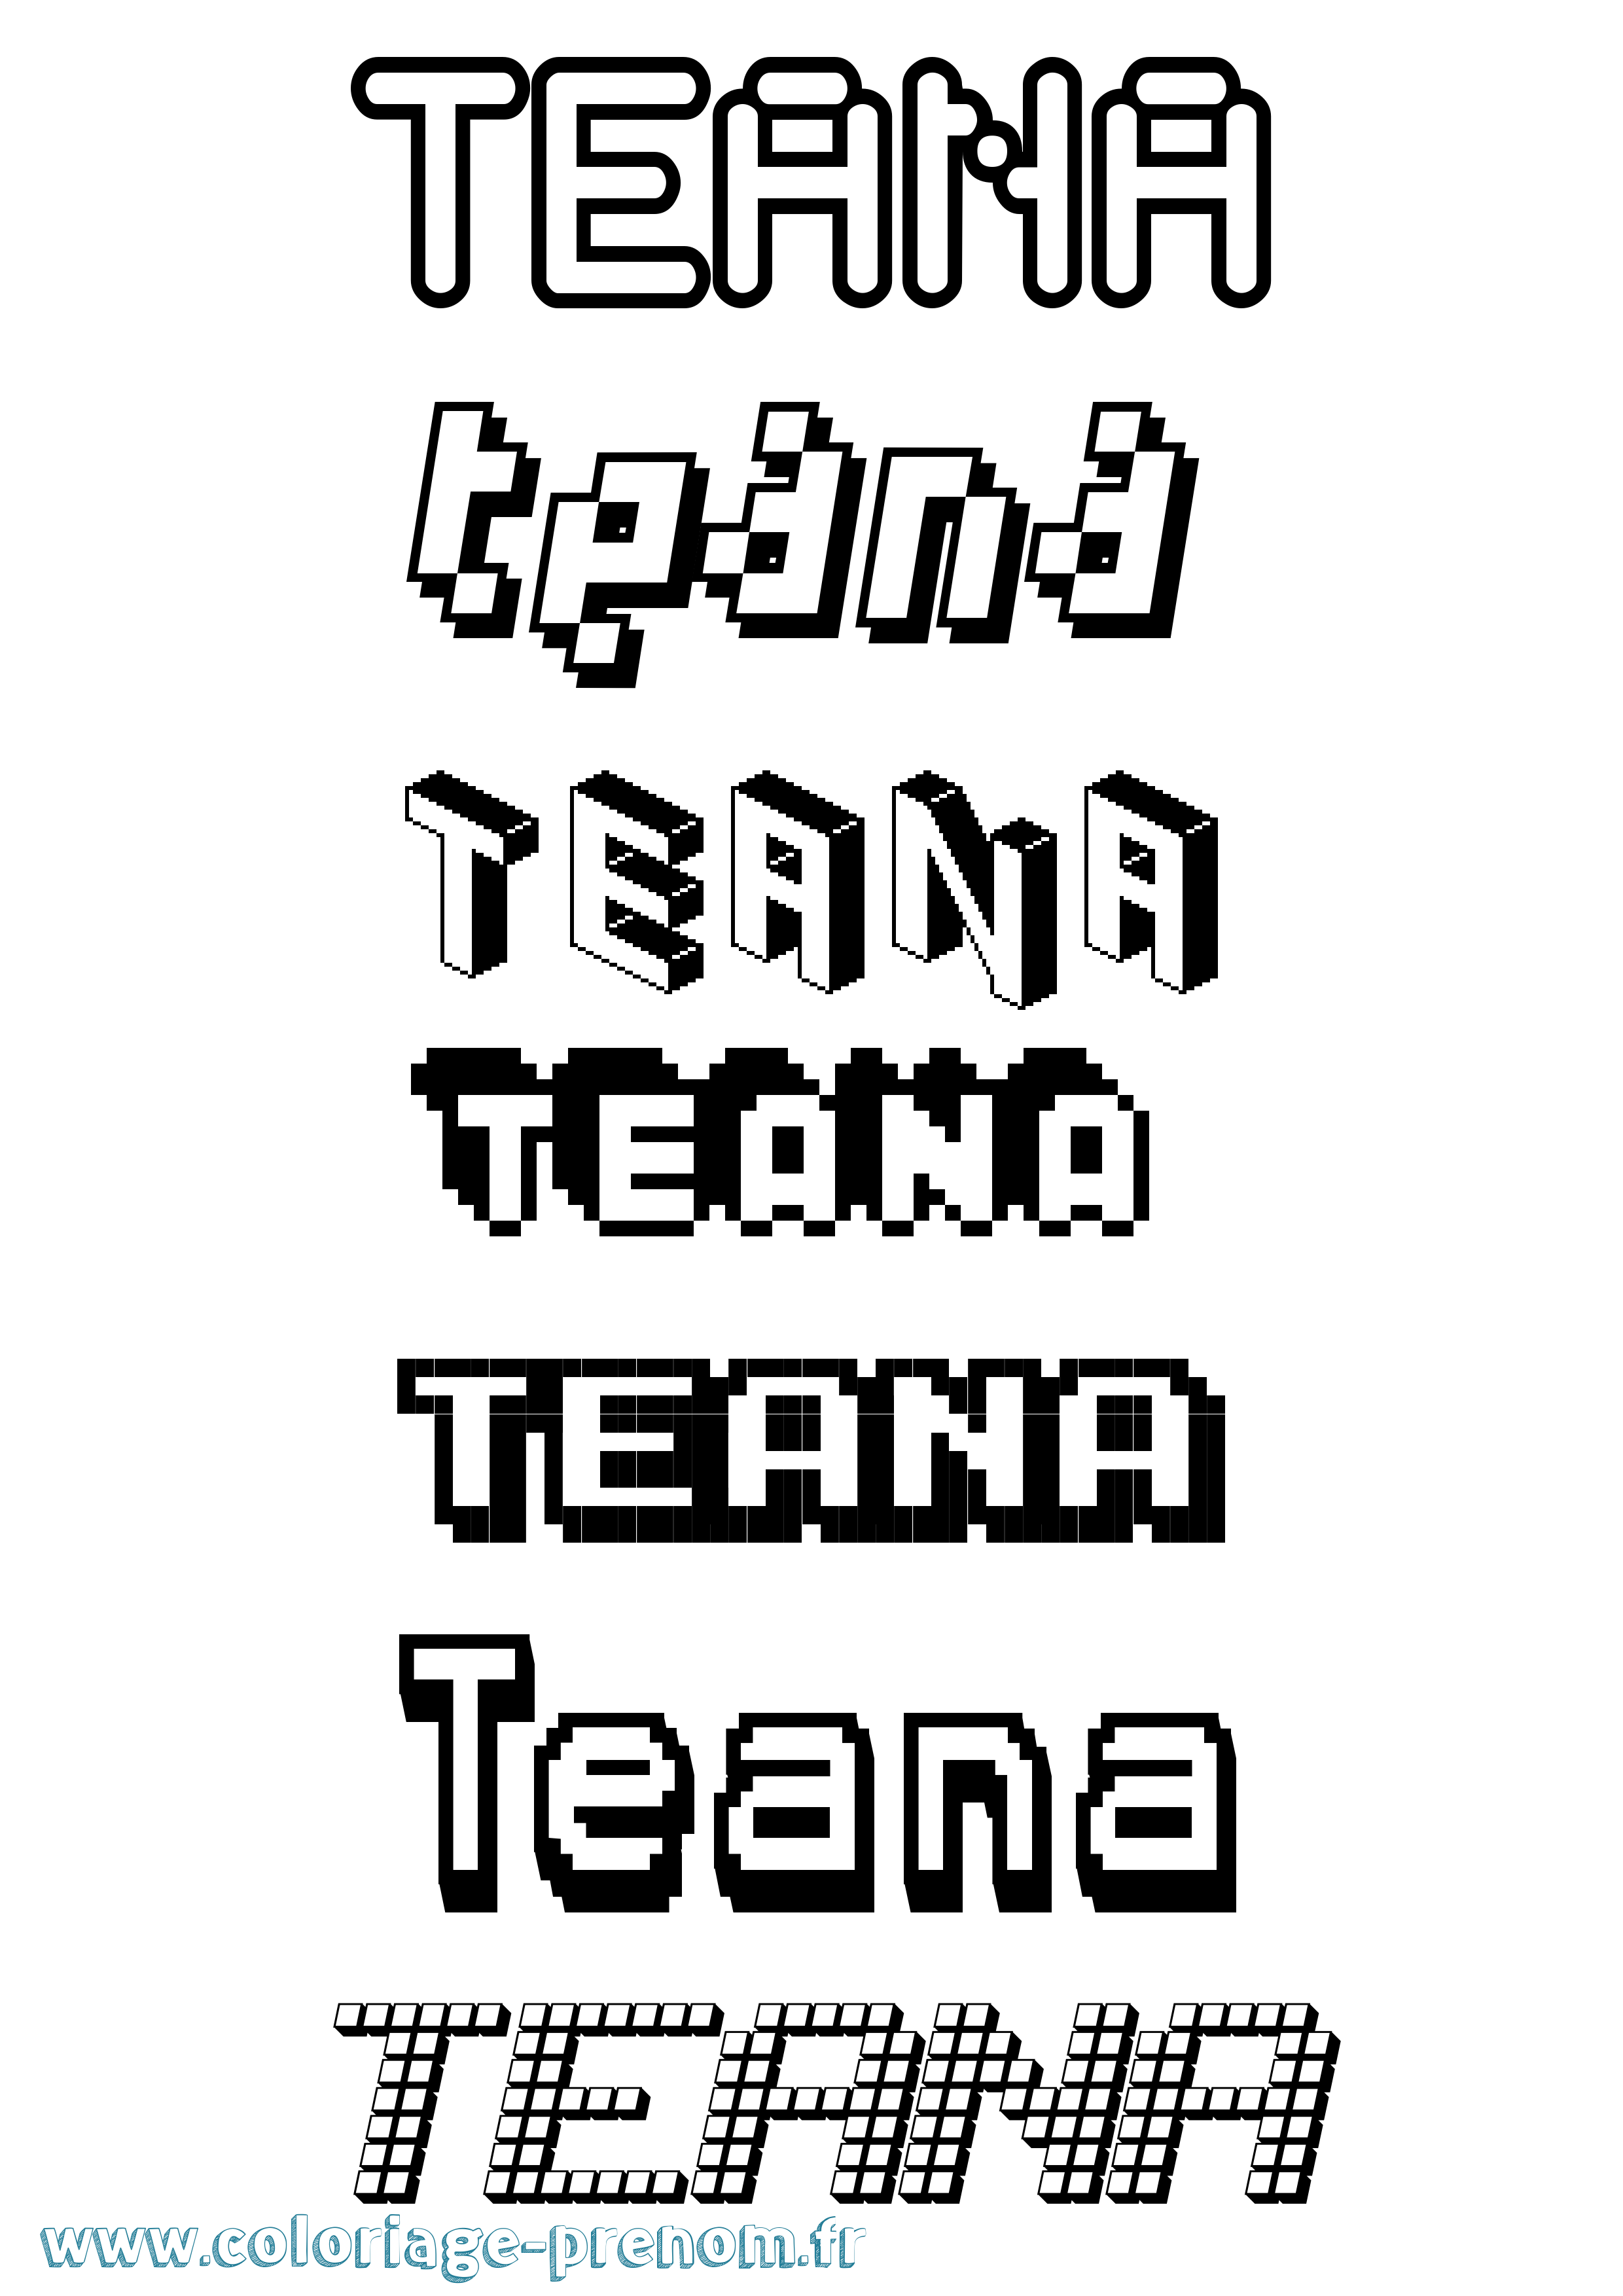 Coloriage prénom Teana Pixel